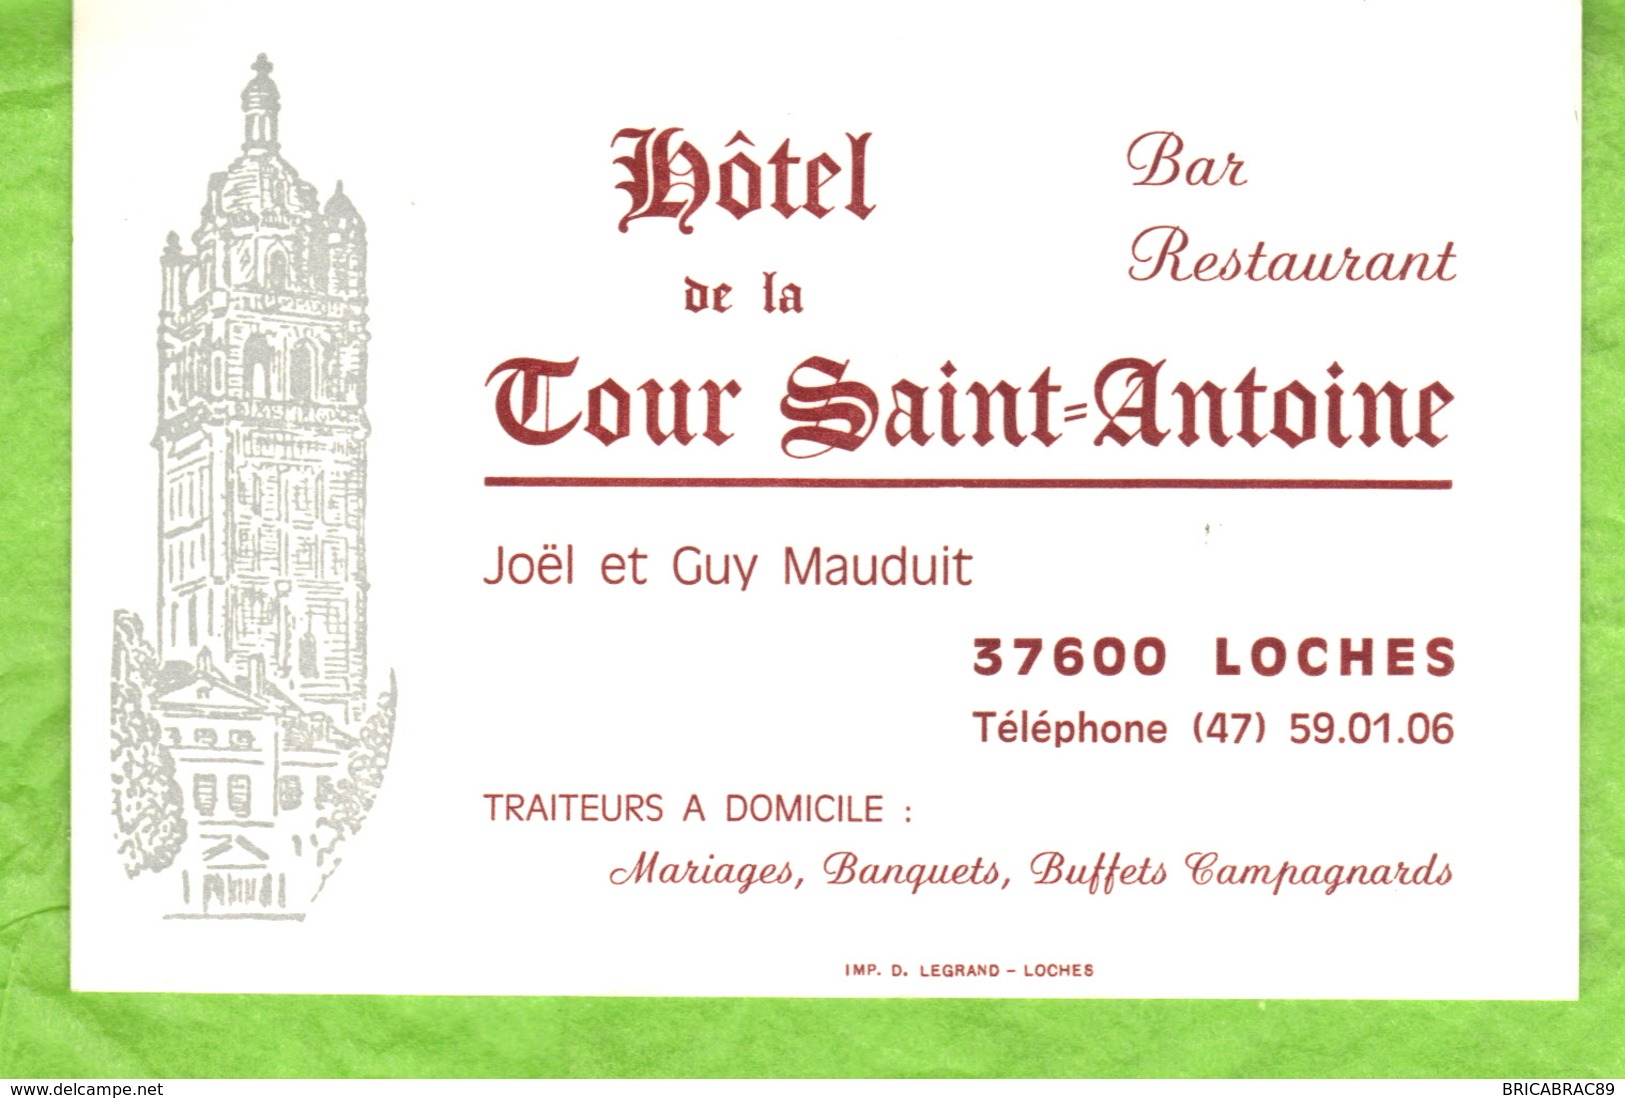 Carte De Visite   Hôtel De La Tour Saint-Antoine  37600  Loches - Cartes De Visite